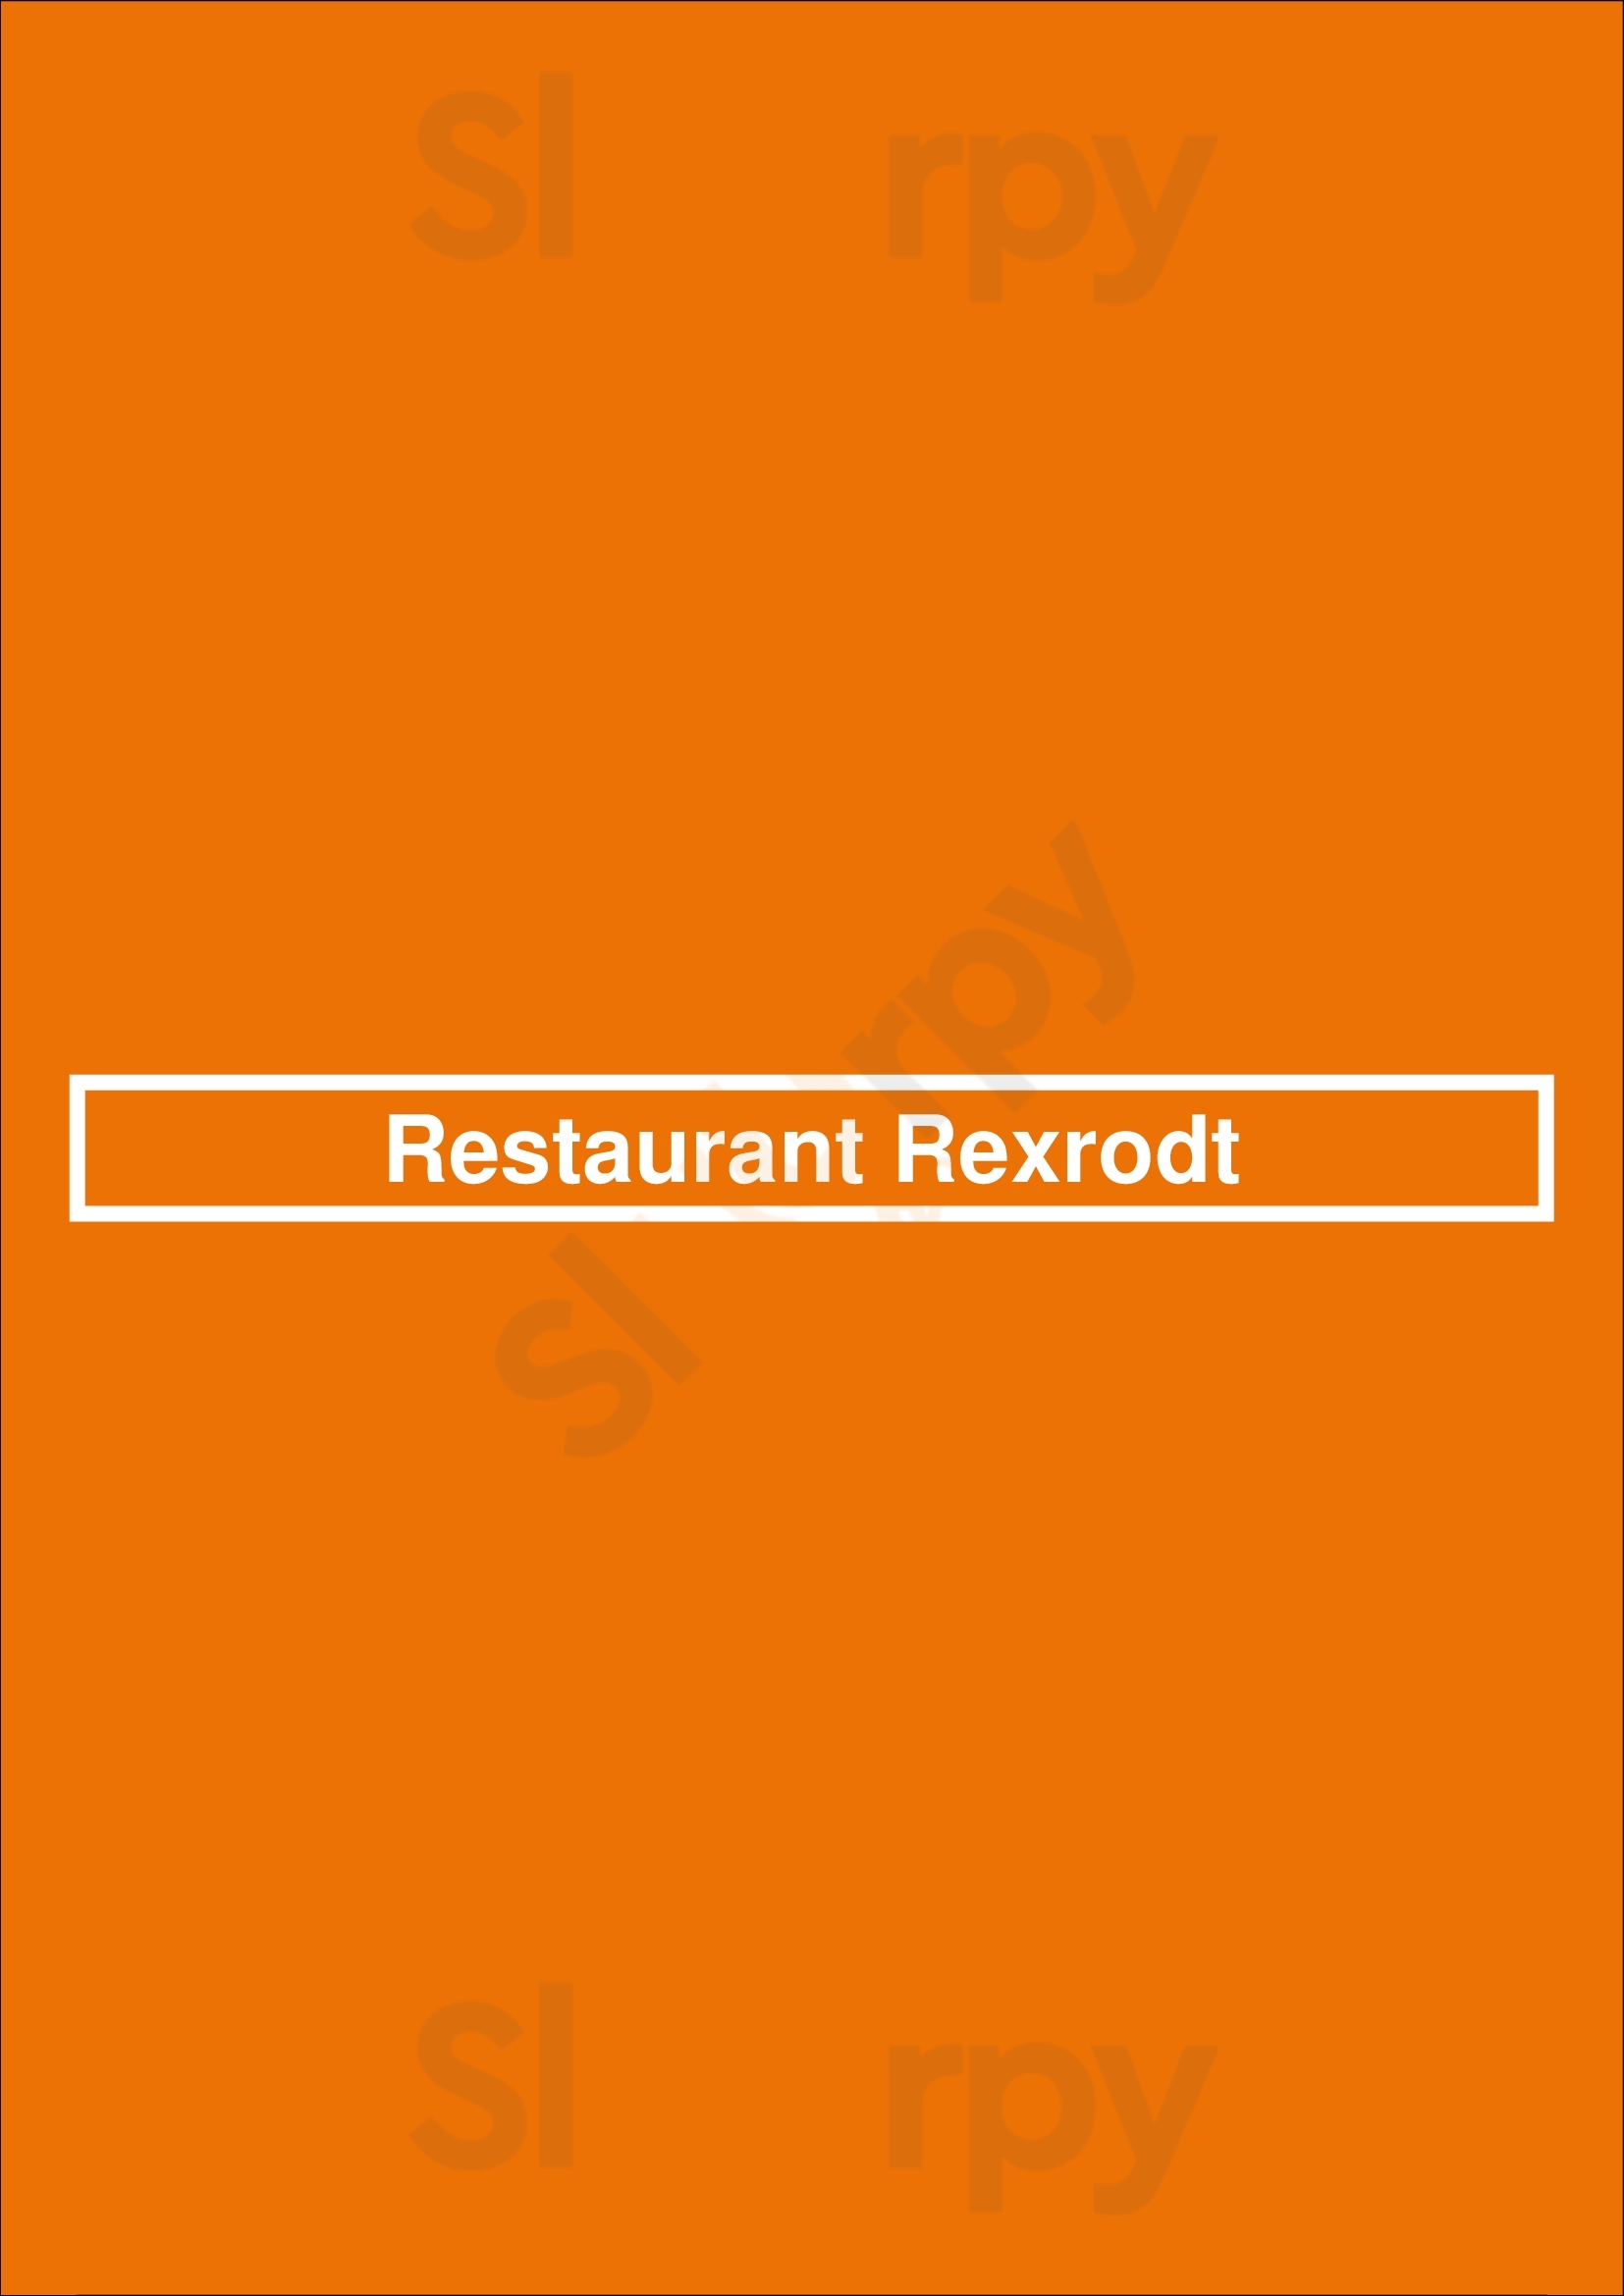 Restaurant Rexrodt Hamburg Menu - 1